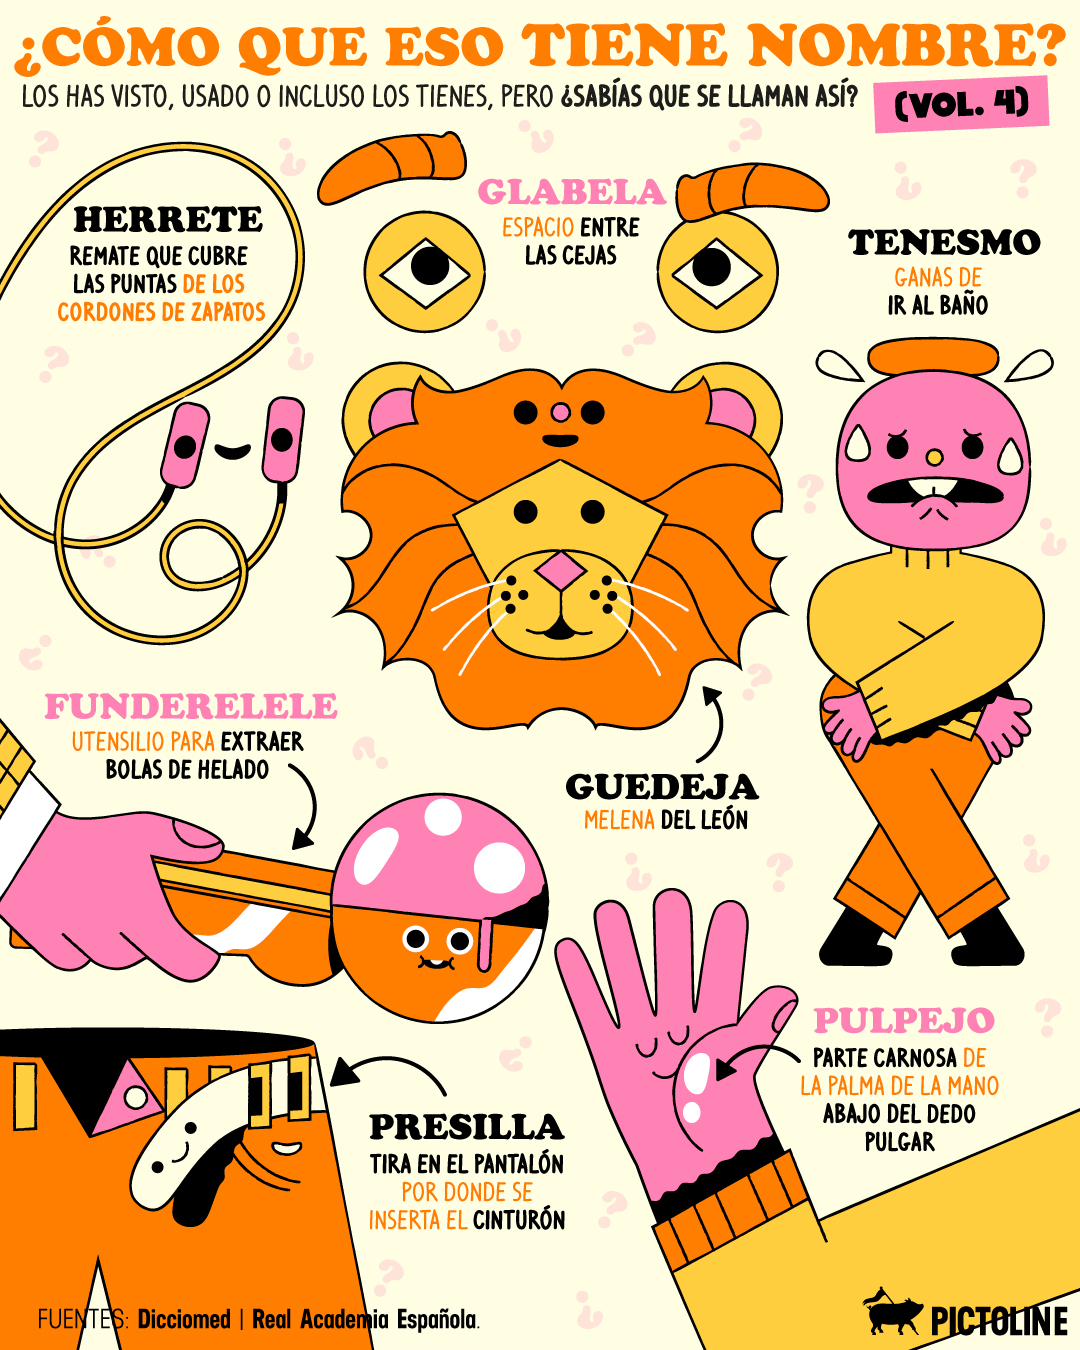 Nueva palabra favorita: funderelele 🤓🫰🍦 #palabras #diccionario #herrete #tenesmo #vocabulario #pulpejo